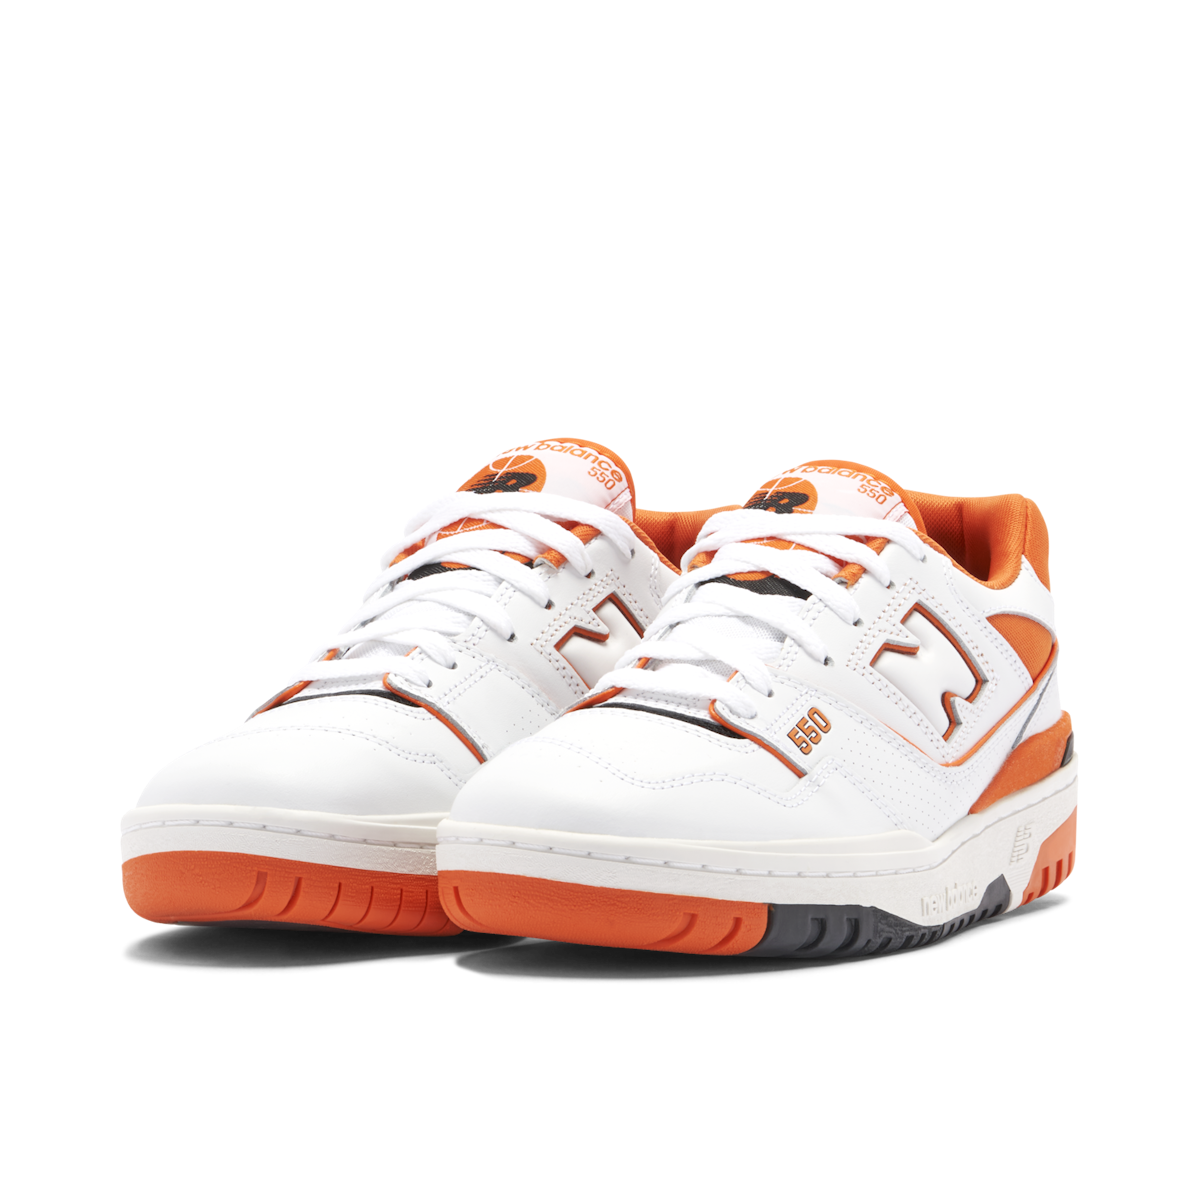 New Balance 550 UNISEX - Trainers - white/mottled orange/white - Zalando